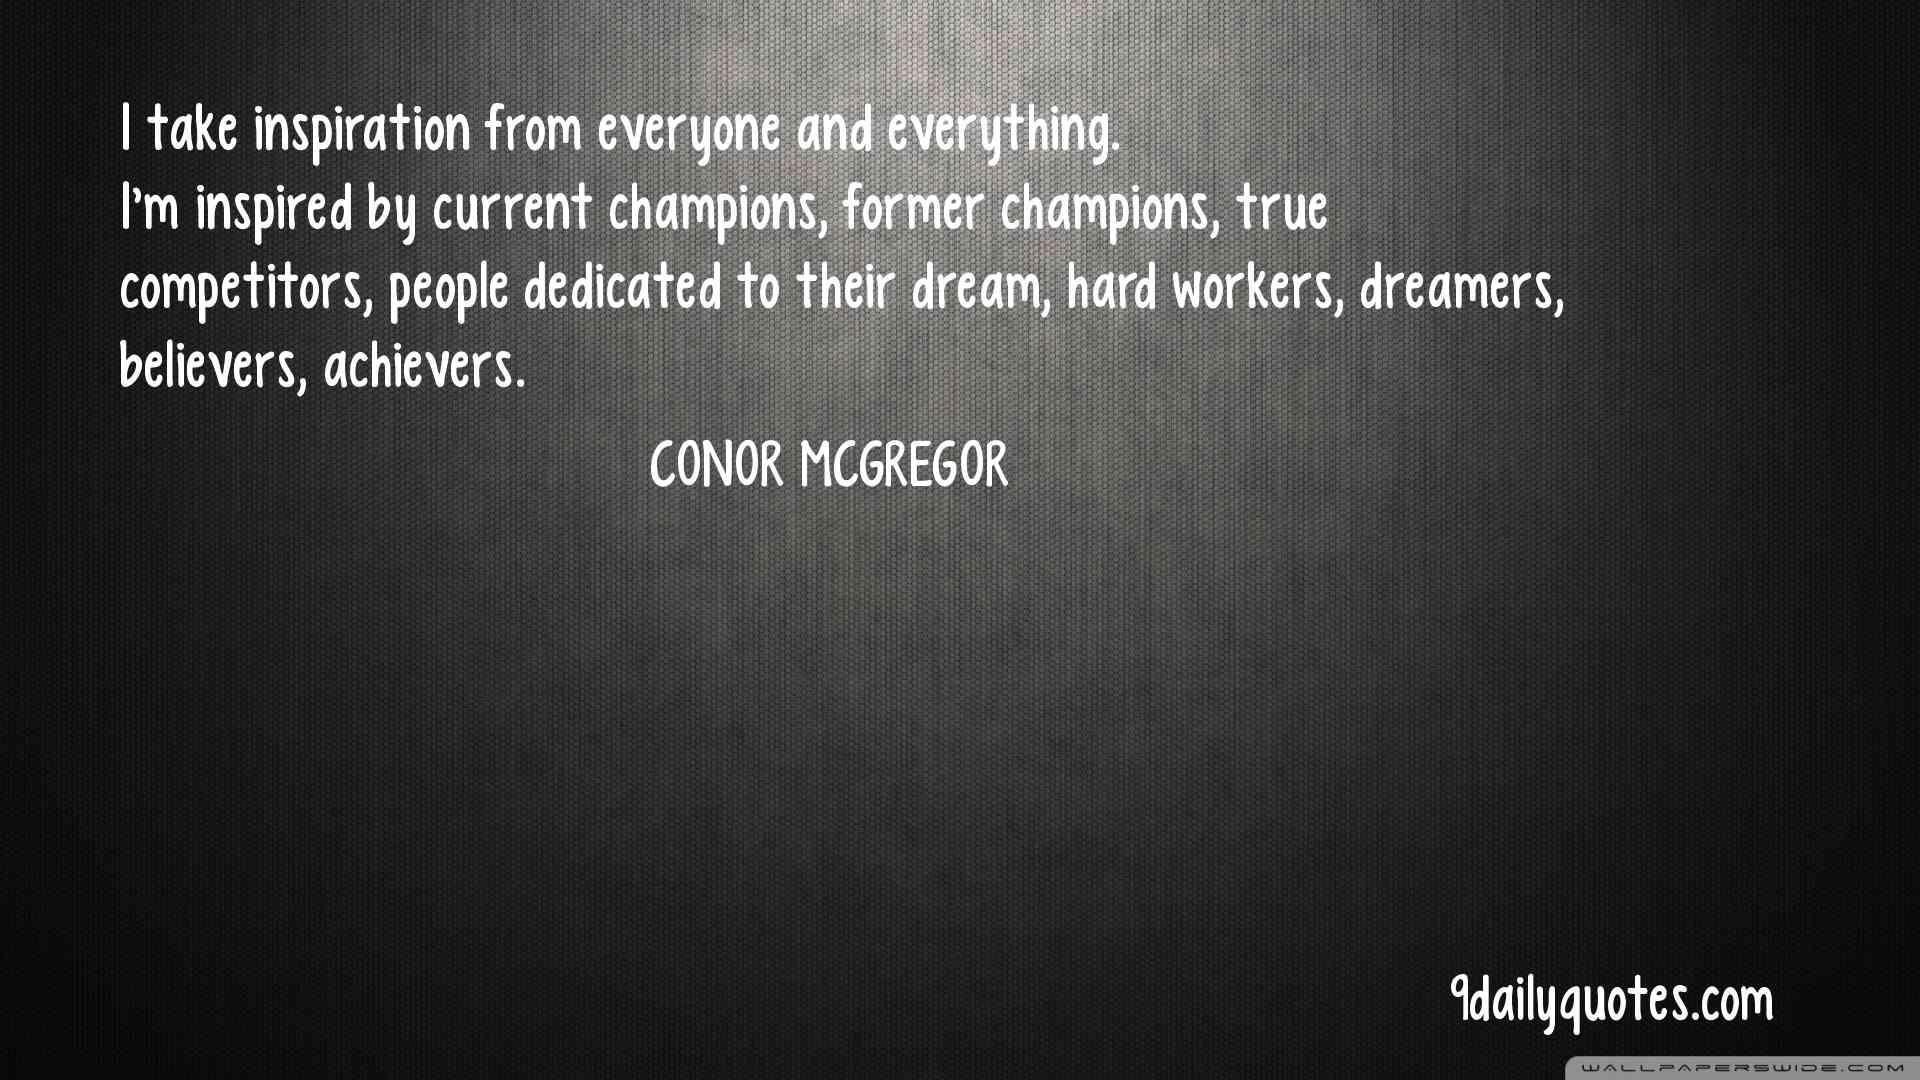 Conor McGregor Quotes: Current Champions Quotes, True Competitors